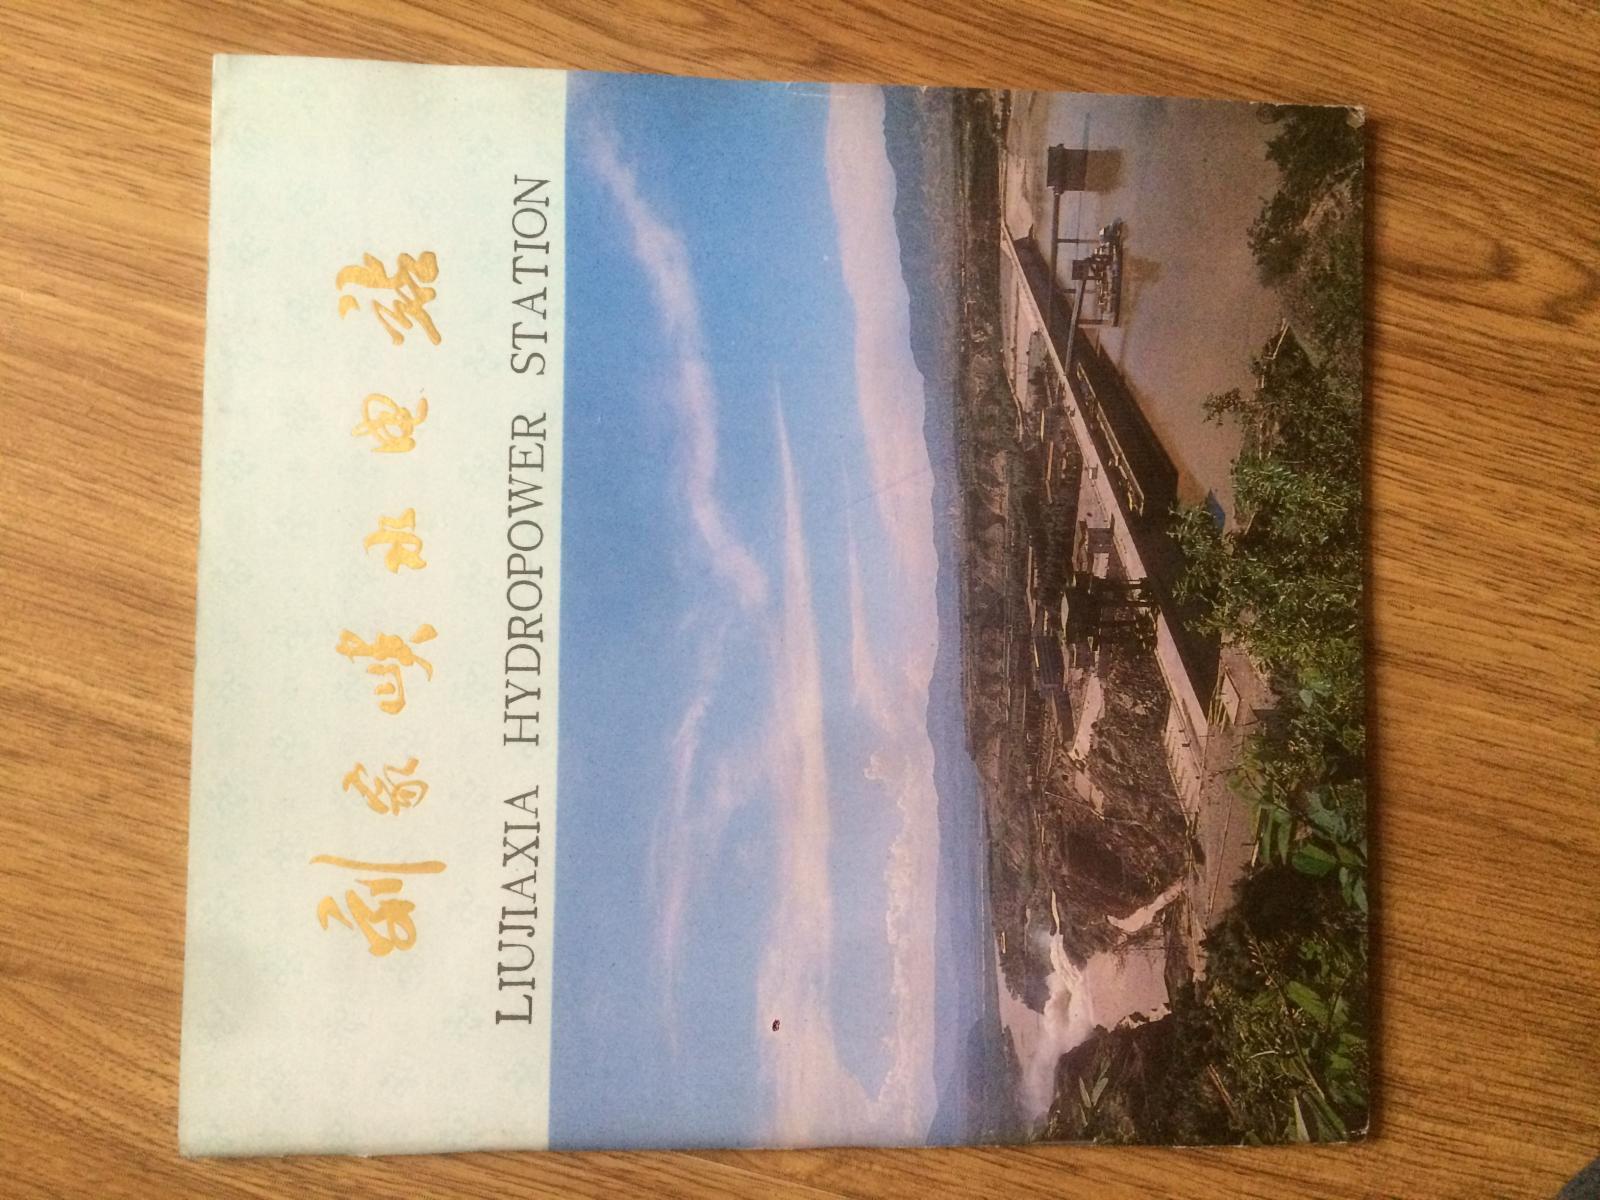 刘家峡水电站（16开方本铜版纸彩印画册，中英文两种文字）